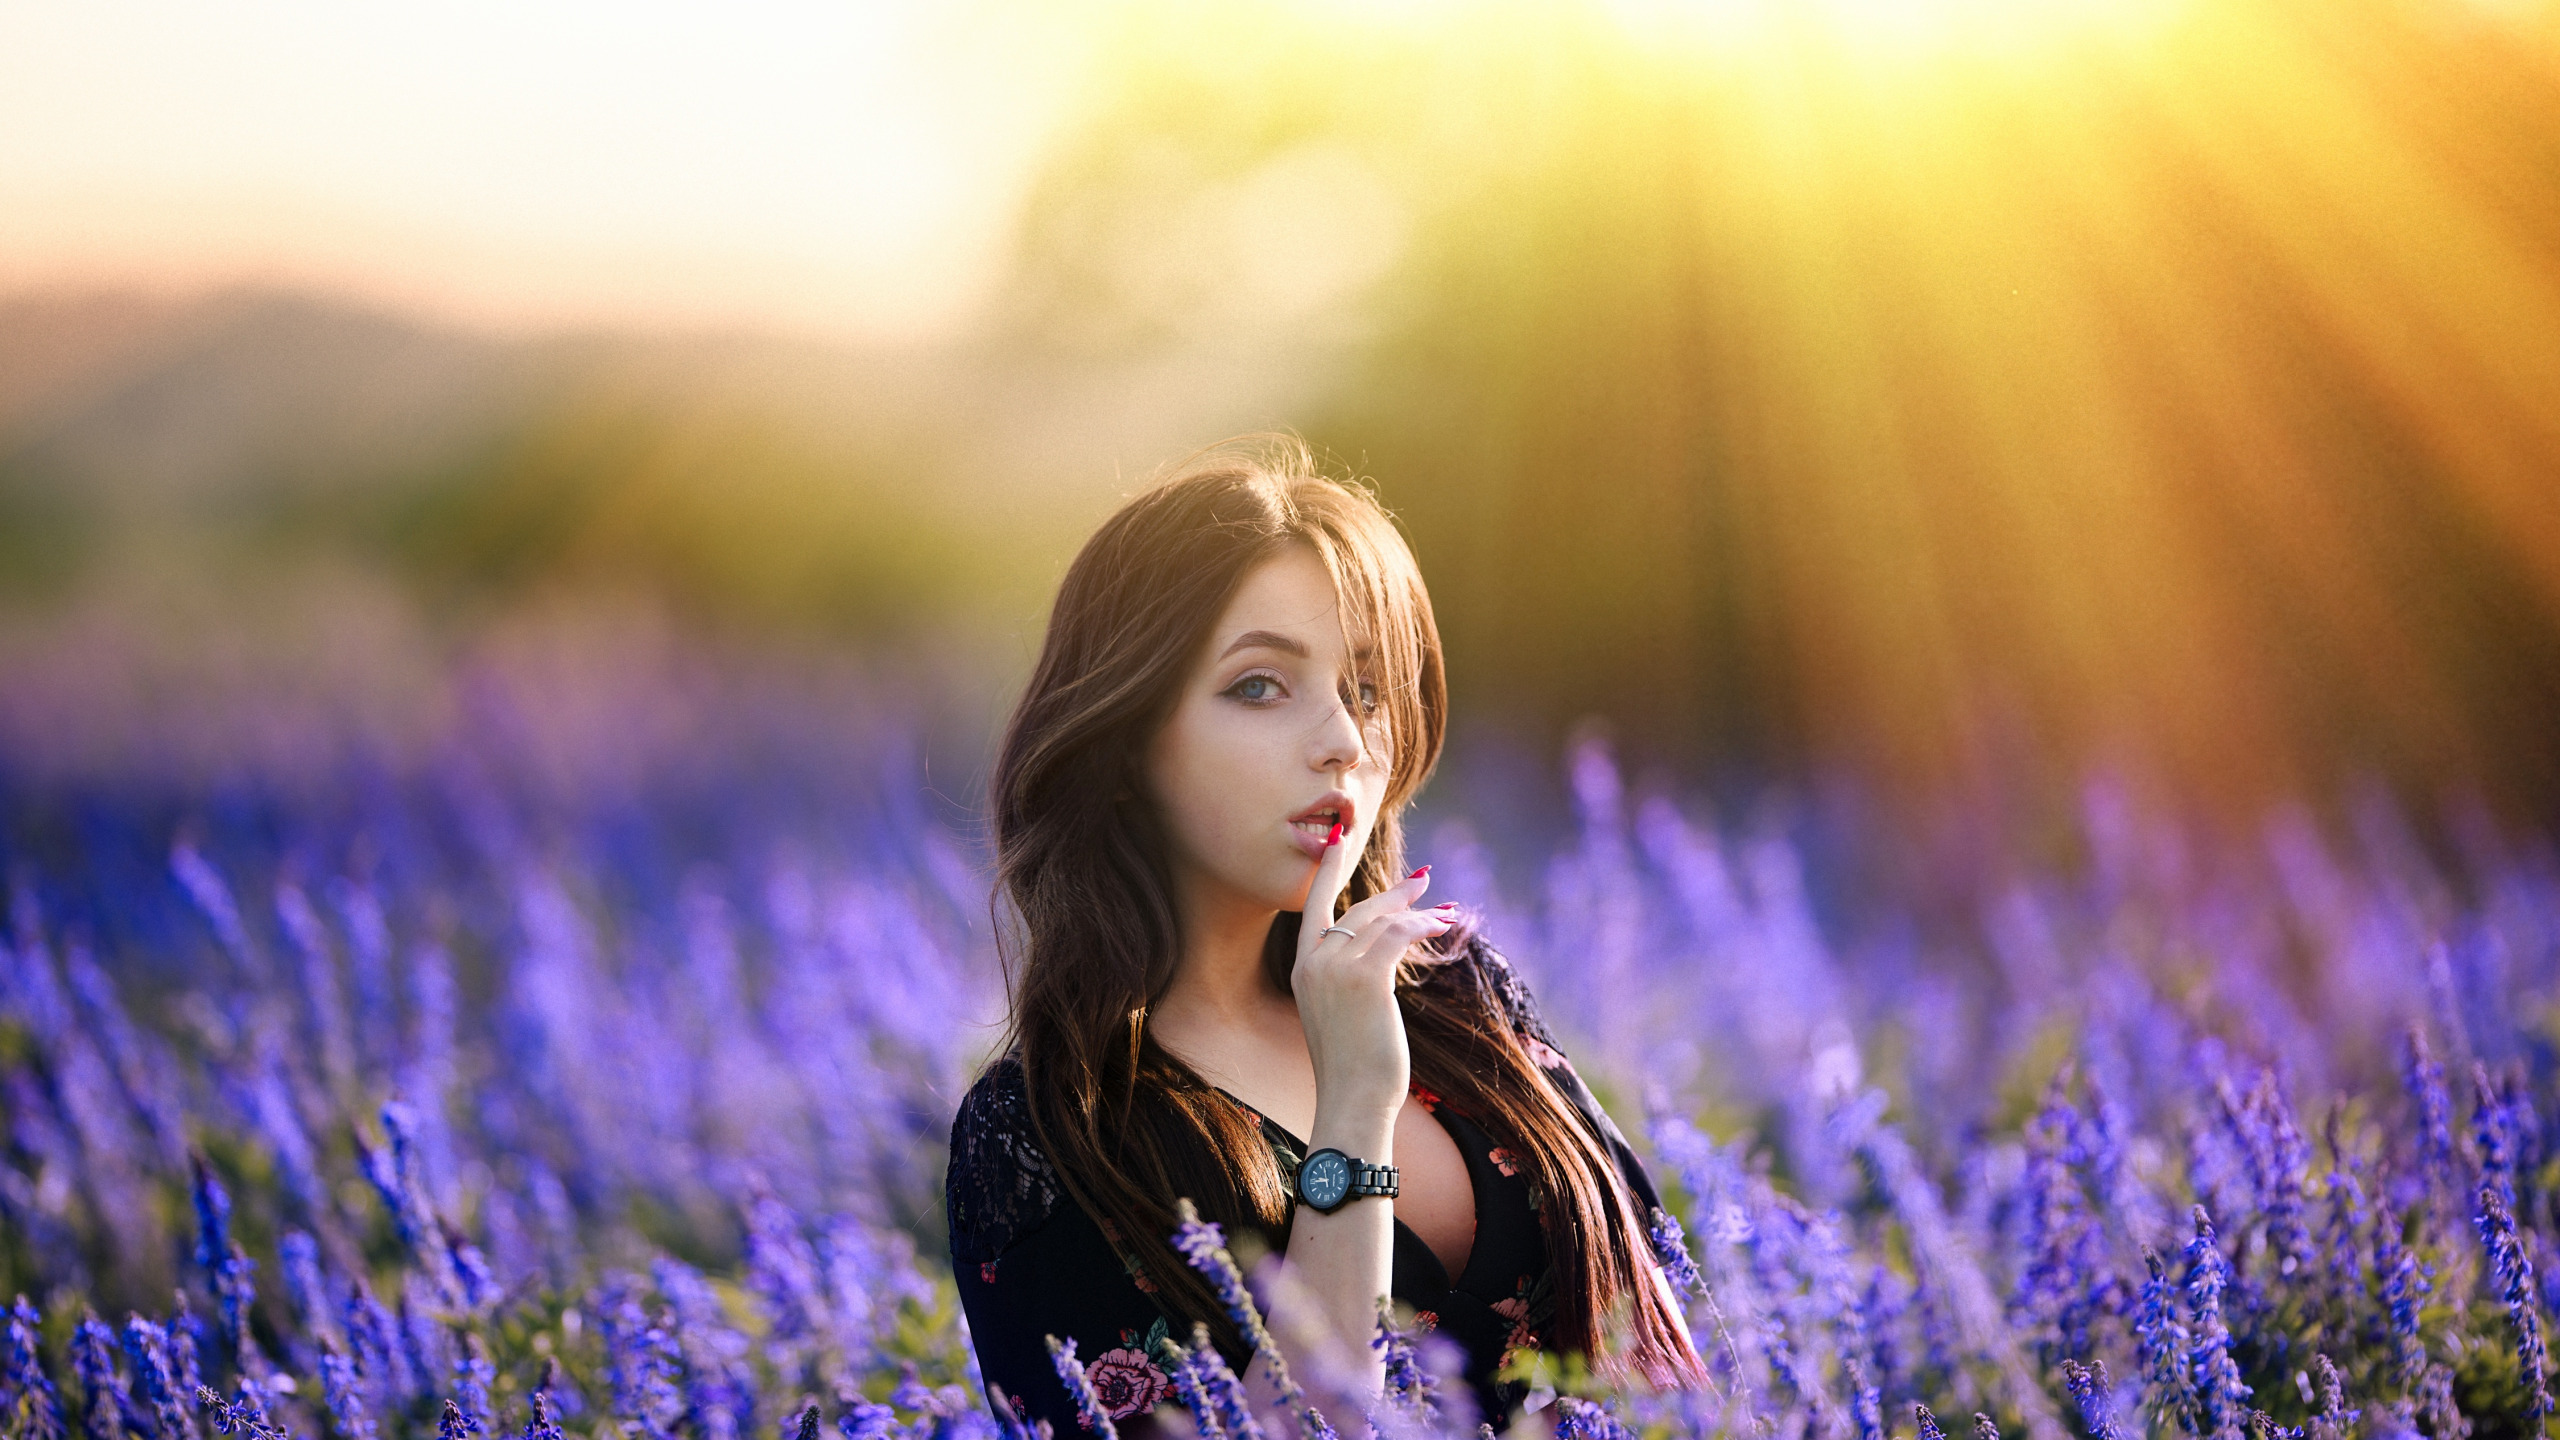 Видео песни красивая девушка. Девушка в цветочном поле. Красивая девушка в поле. Девушка в поле с цветами. Женщина в цветущем поле.